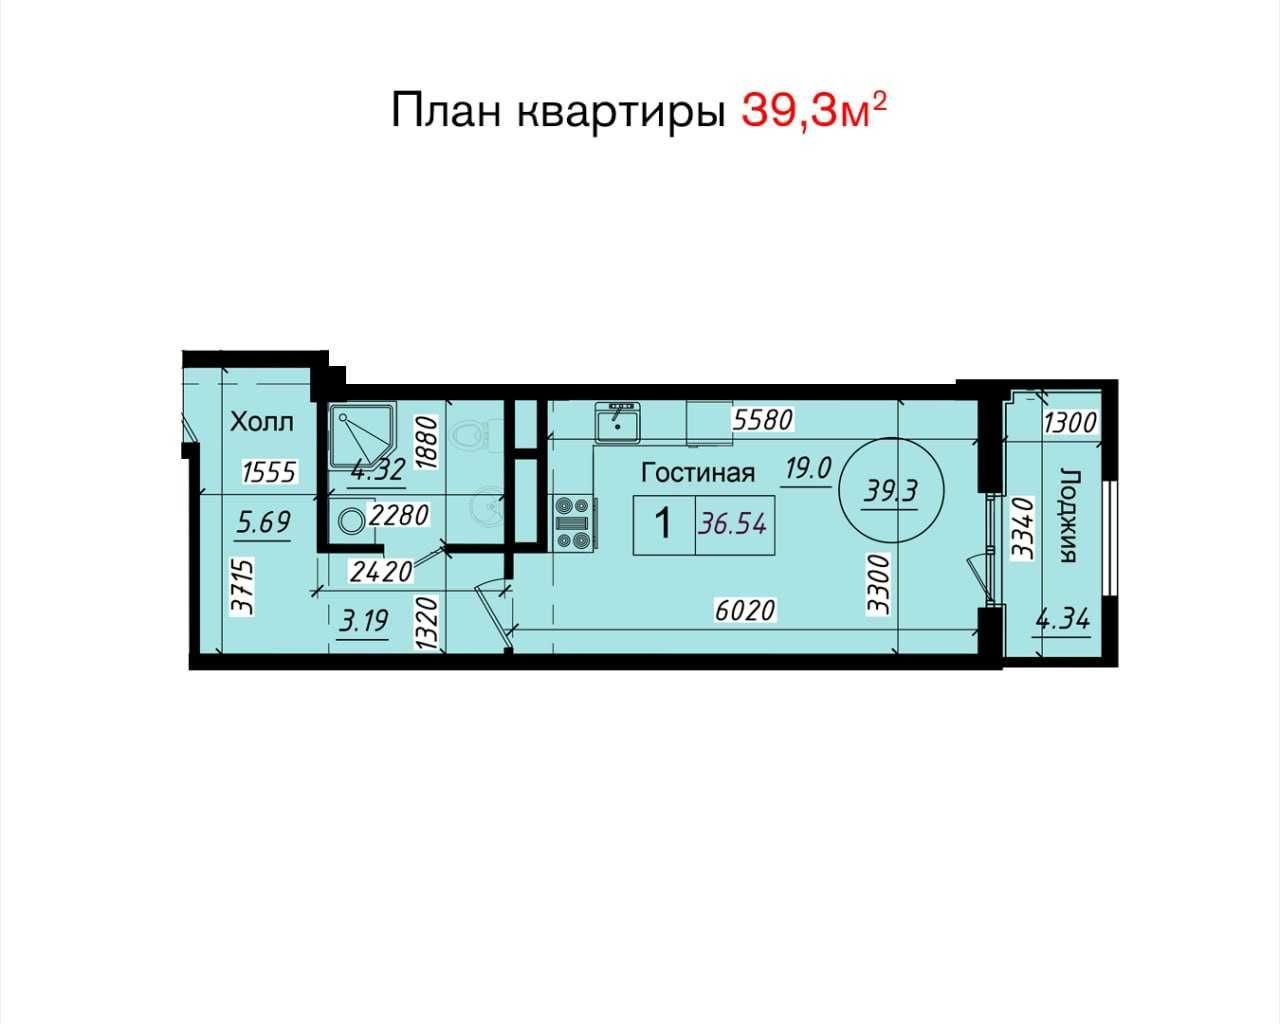 Юнсобод 1/2 комнатные квартиры 3-этапная рассрочка 50\30\20 (4110)